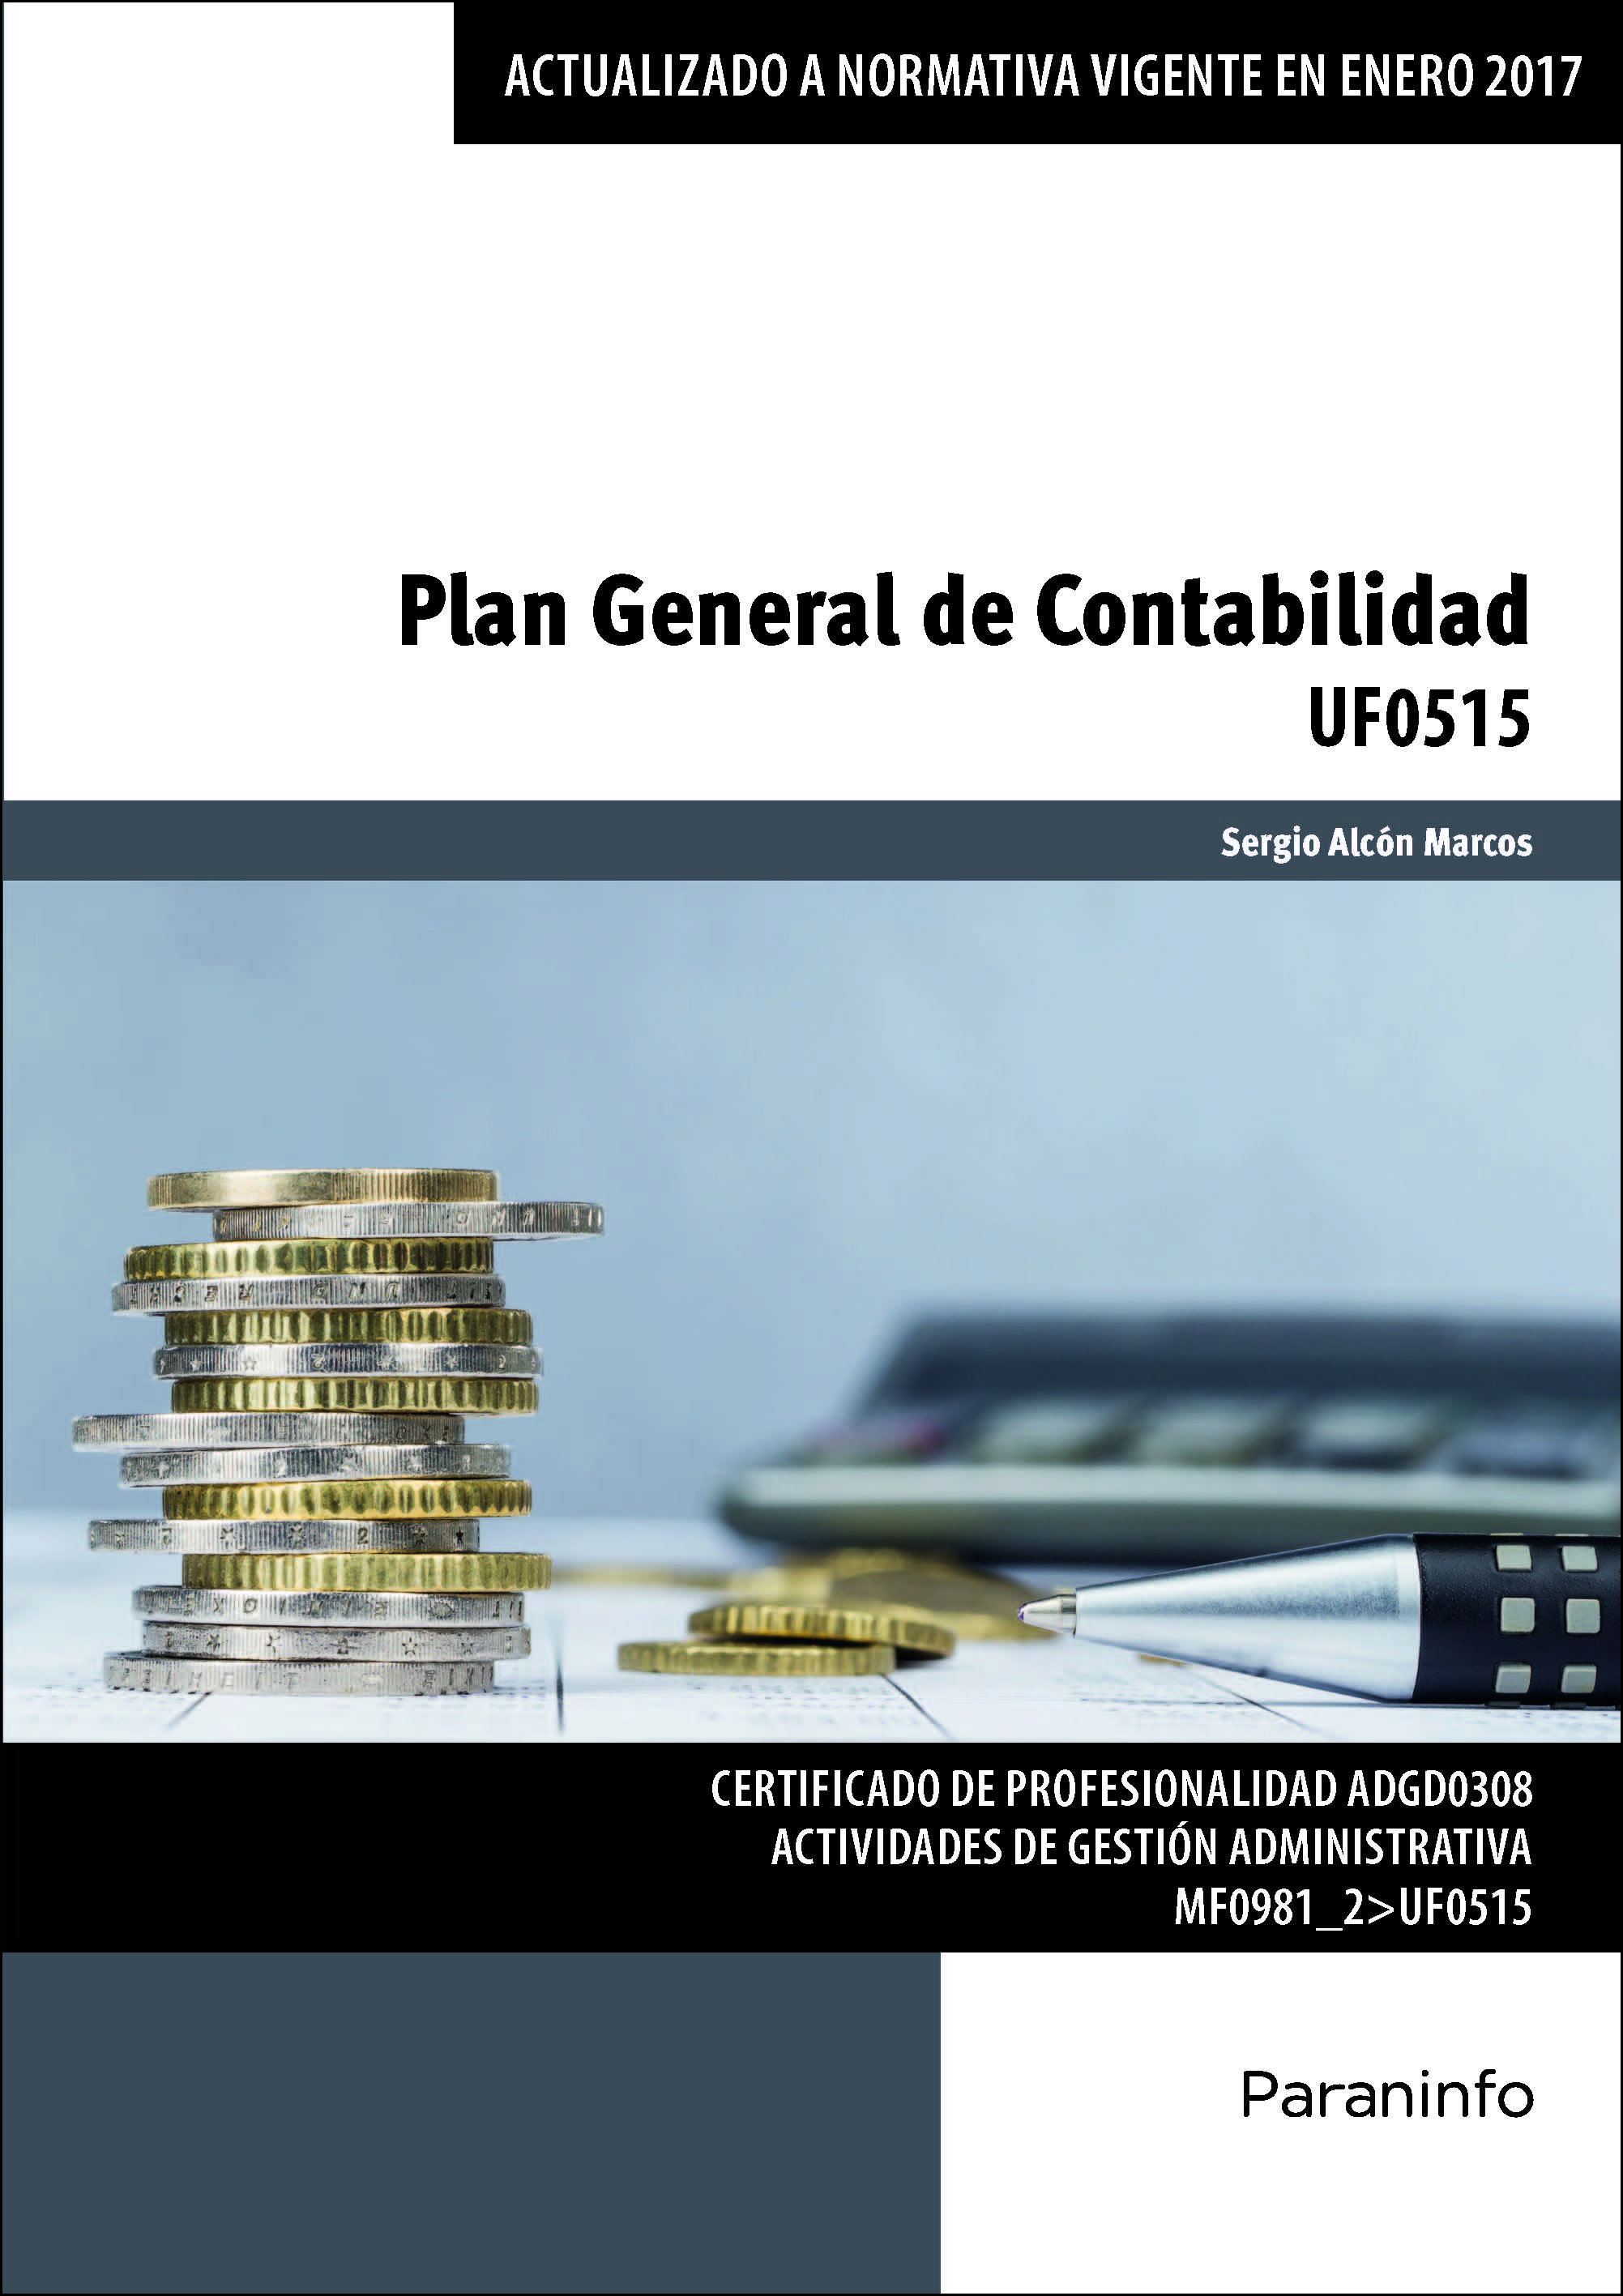 UF0515 - Plan General de Contabilidad